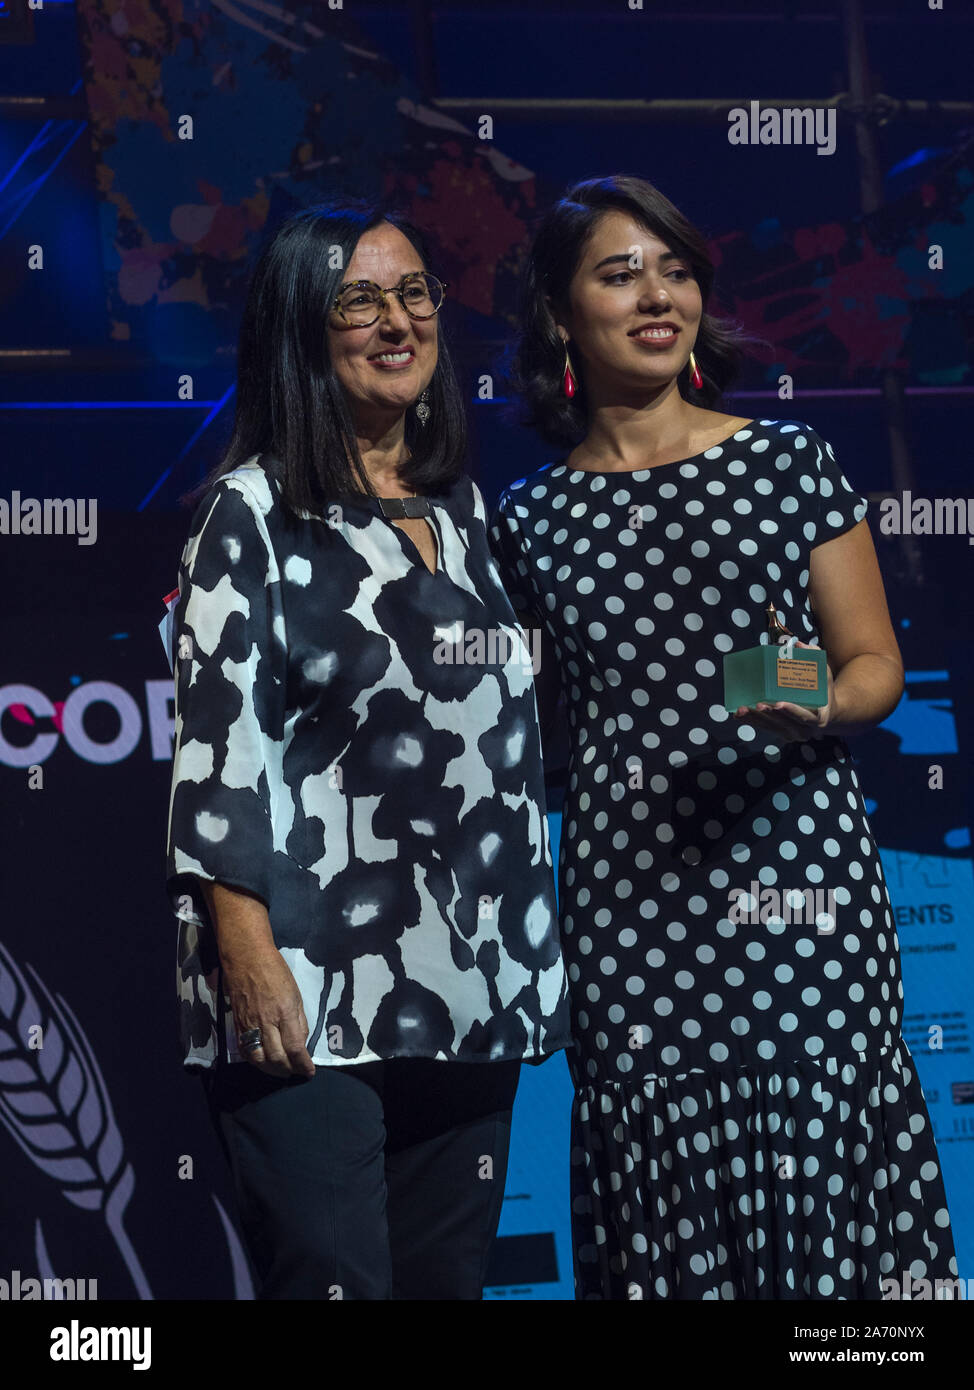 Camina Kater recoge el premio al mejor cortometraje europeo de la Sección Oficial de la 64 Seminci por carne, junto a la productora Chelo Loureiro. Foto de stock